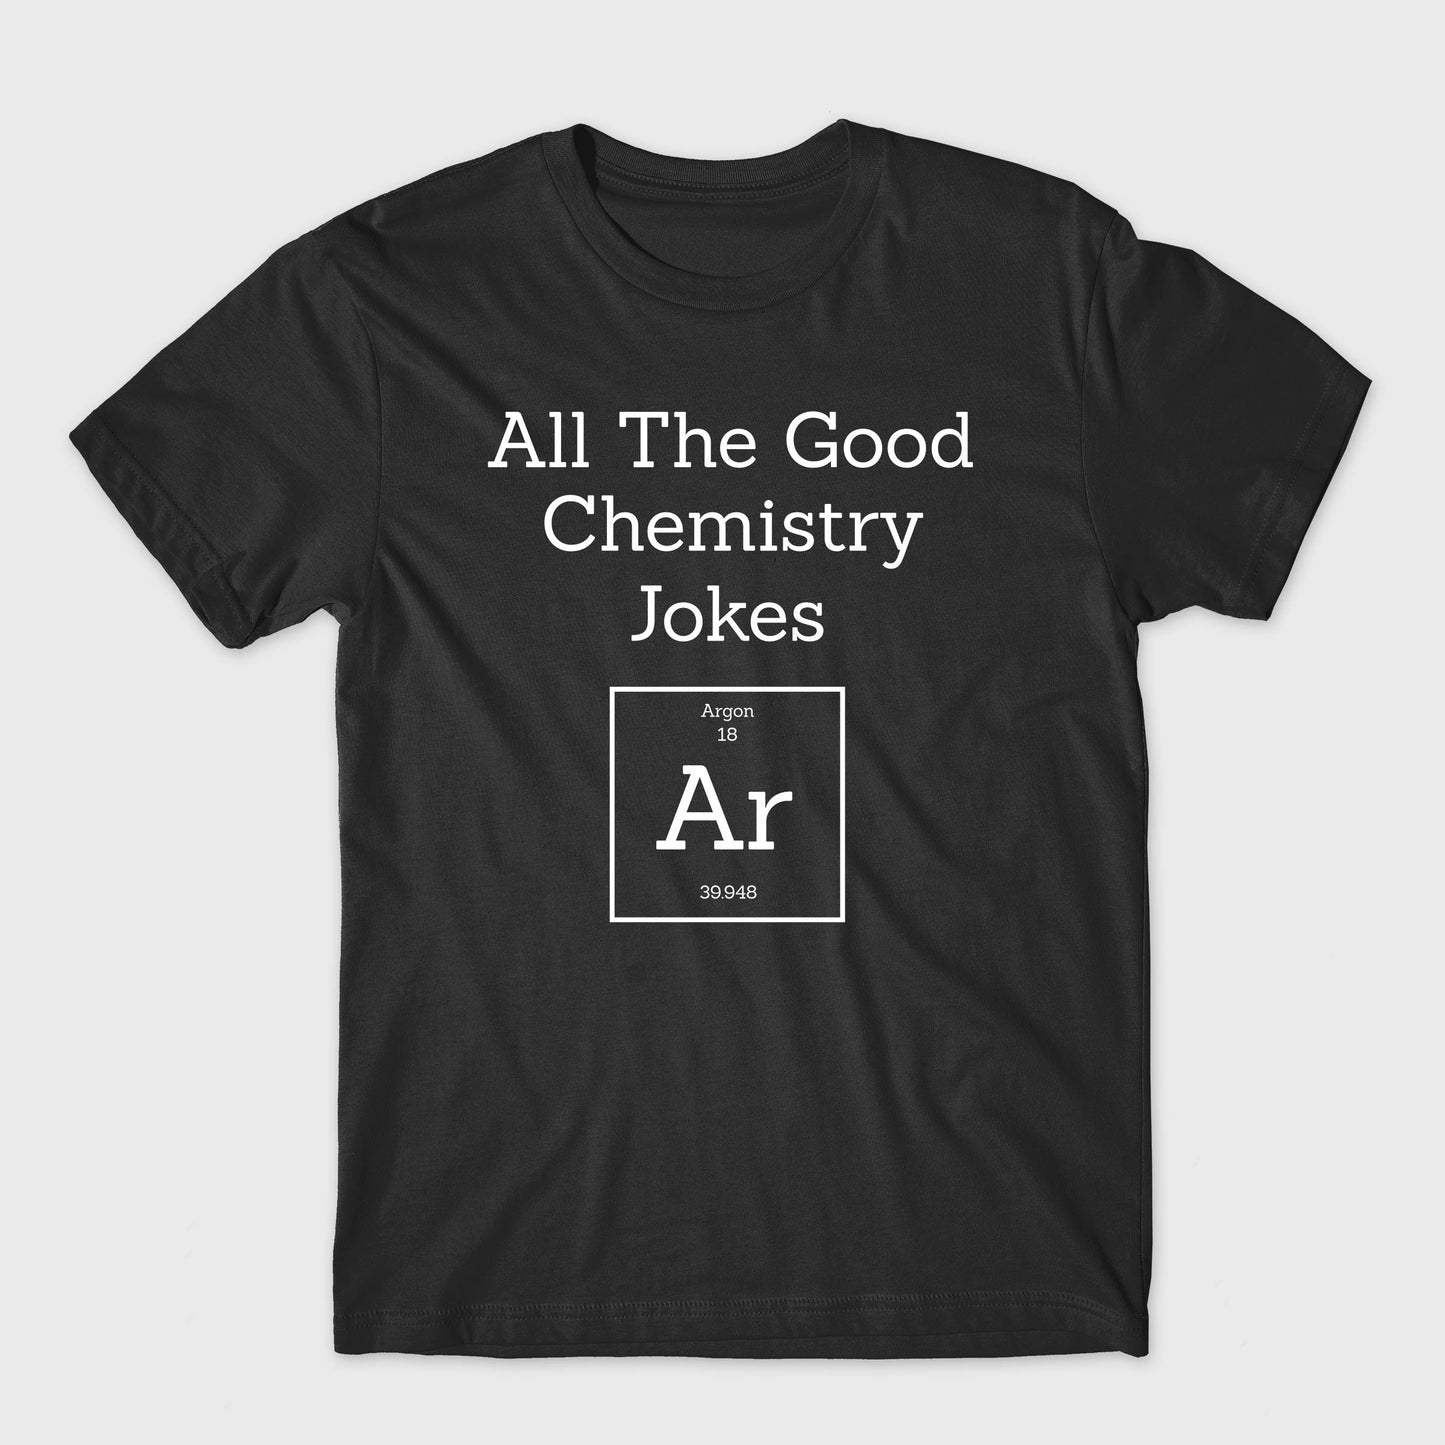 All the Good Chemistry Jokes Argon Unisex T-Shirt